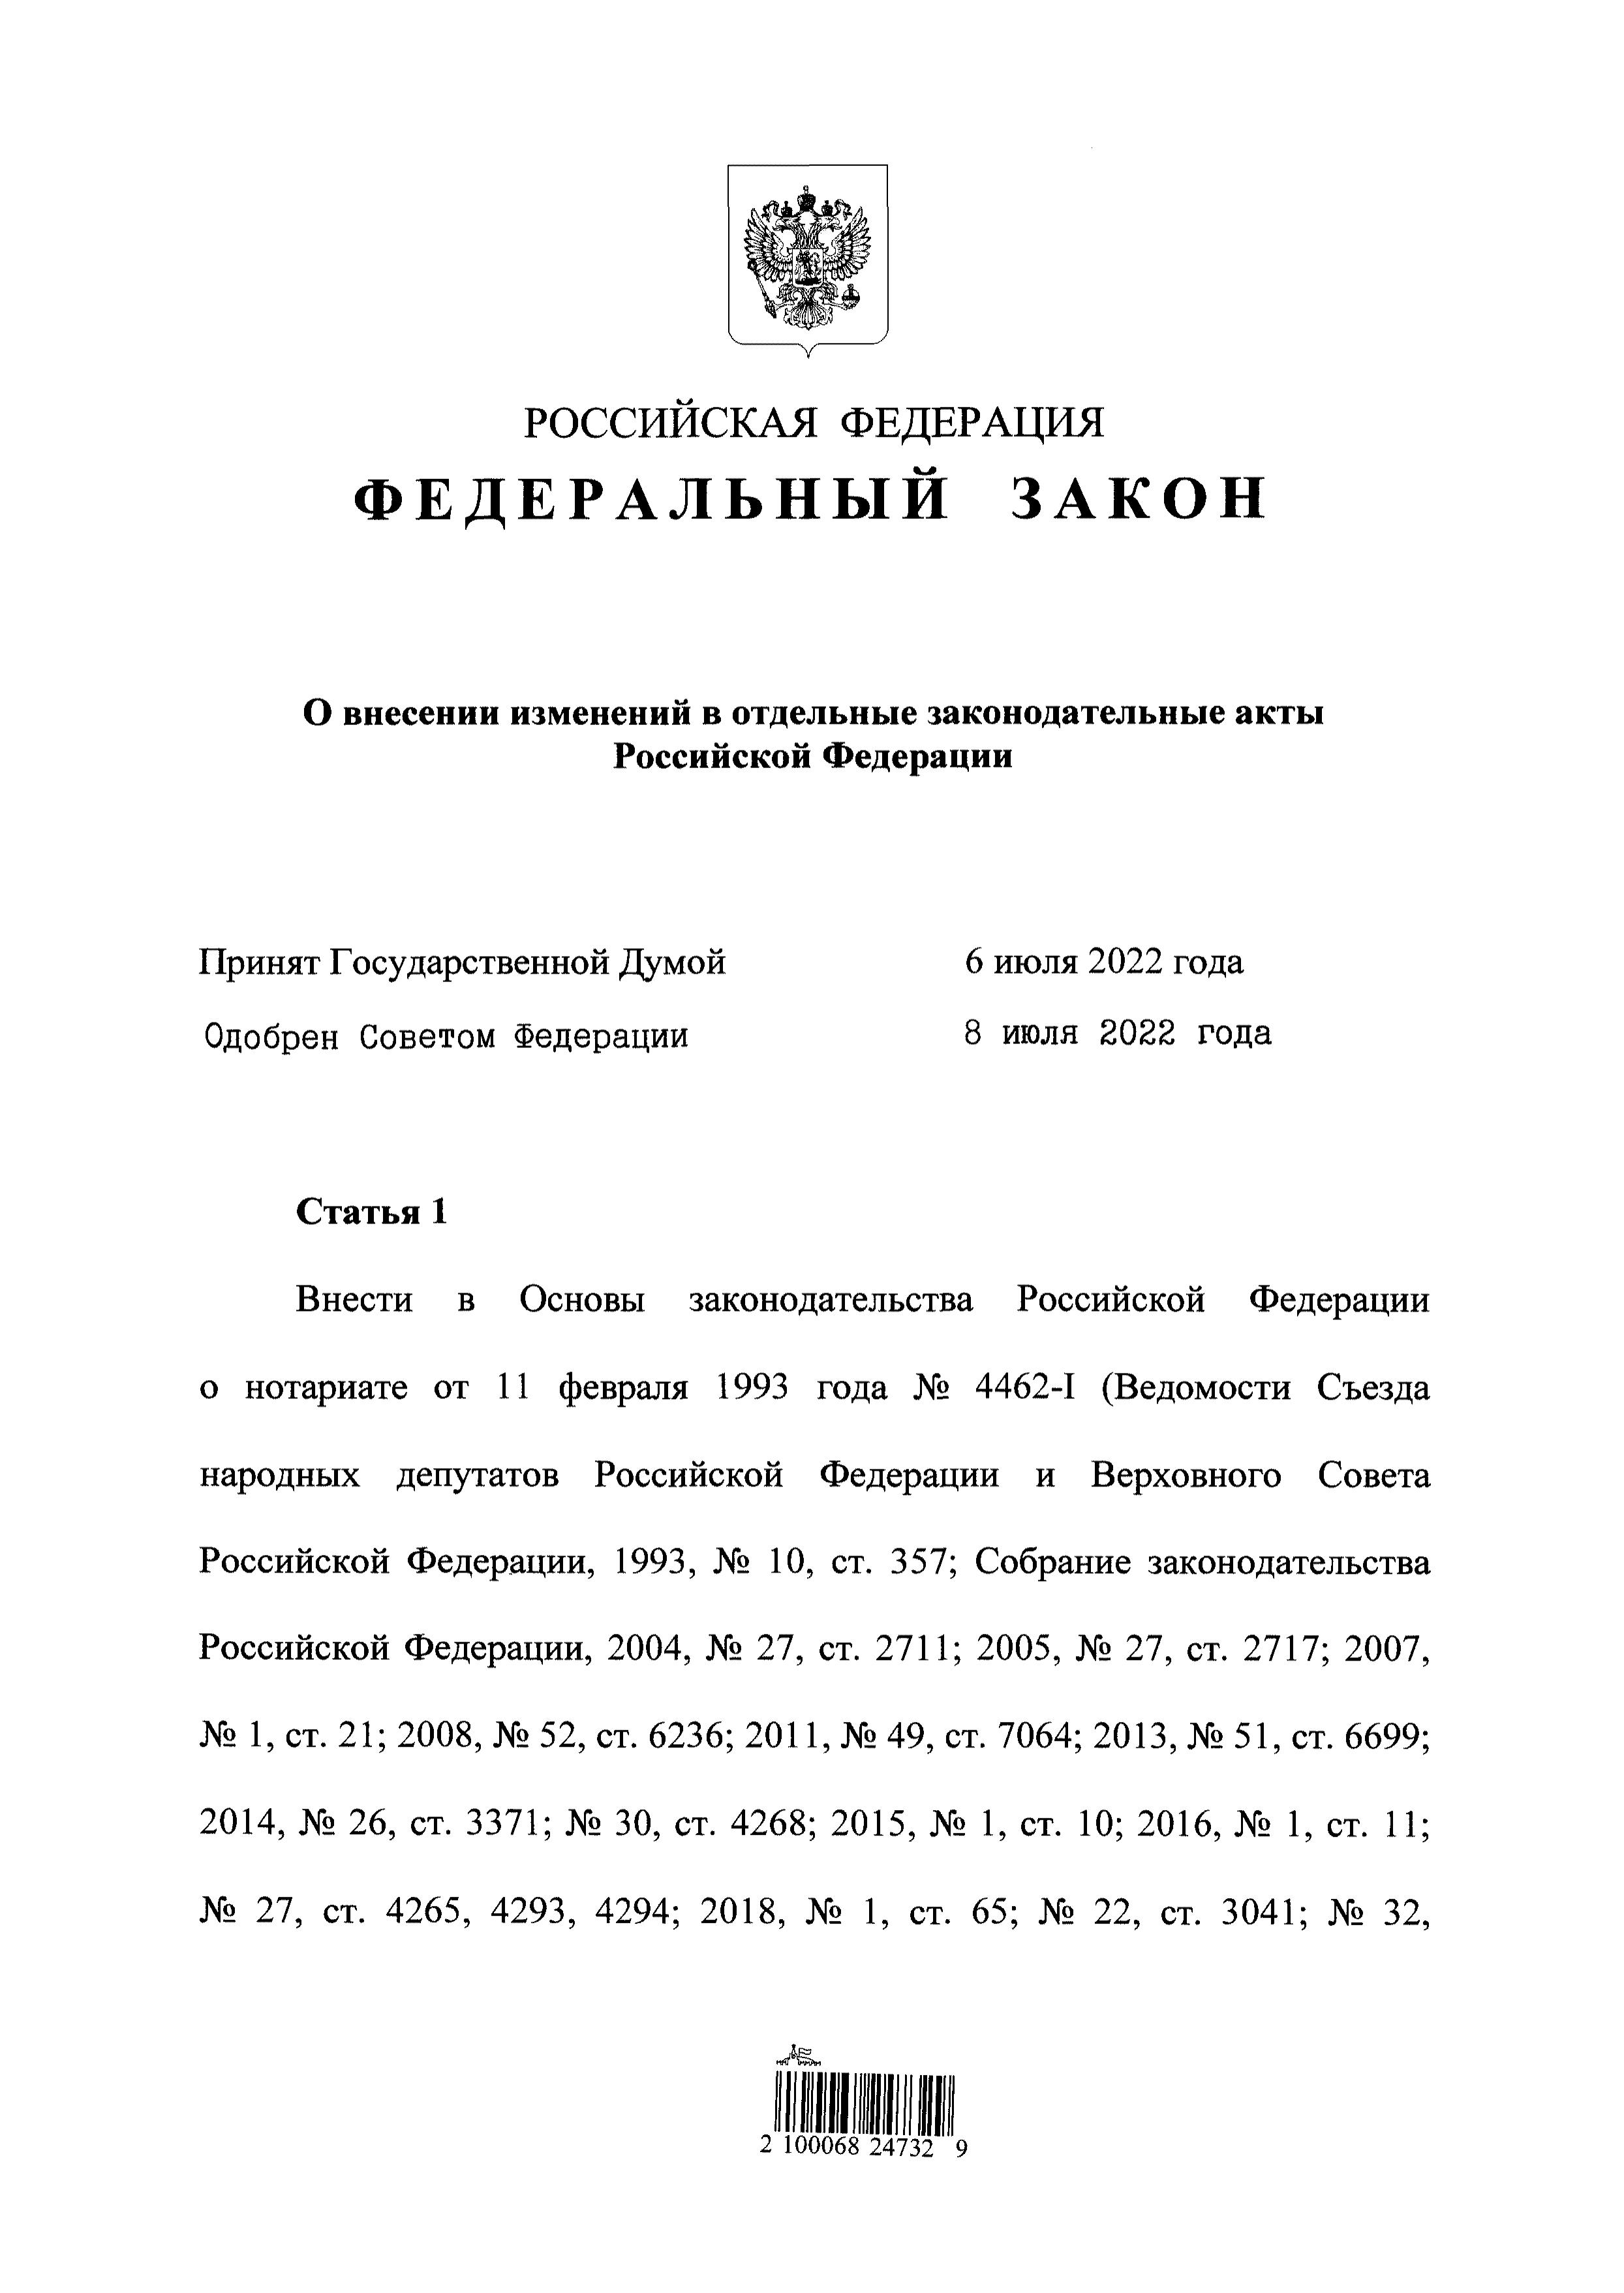 В Федеральный закон от 22.10.2004 г. № 125-ФЗ «Об архивном деле в Российской Федерации» внесены изменения по вопросу хранения нотариальных документов